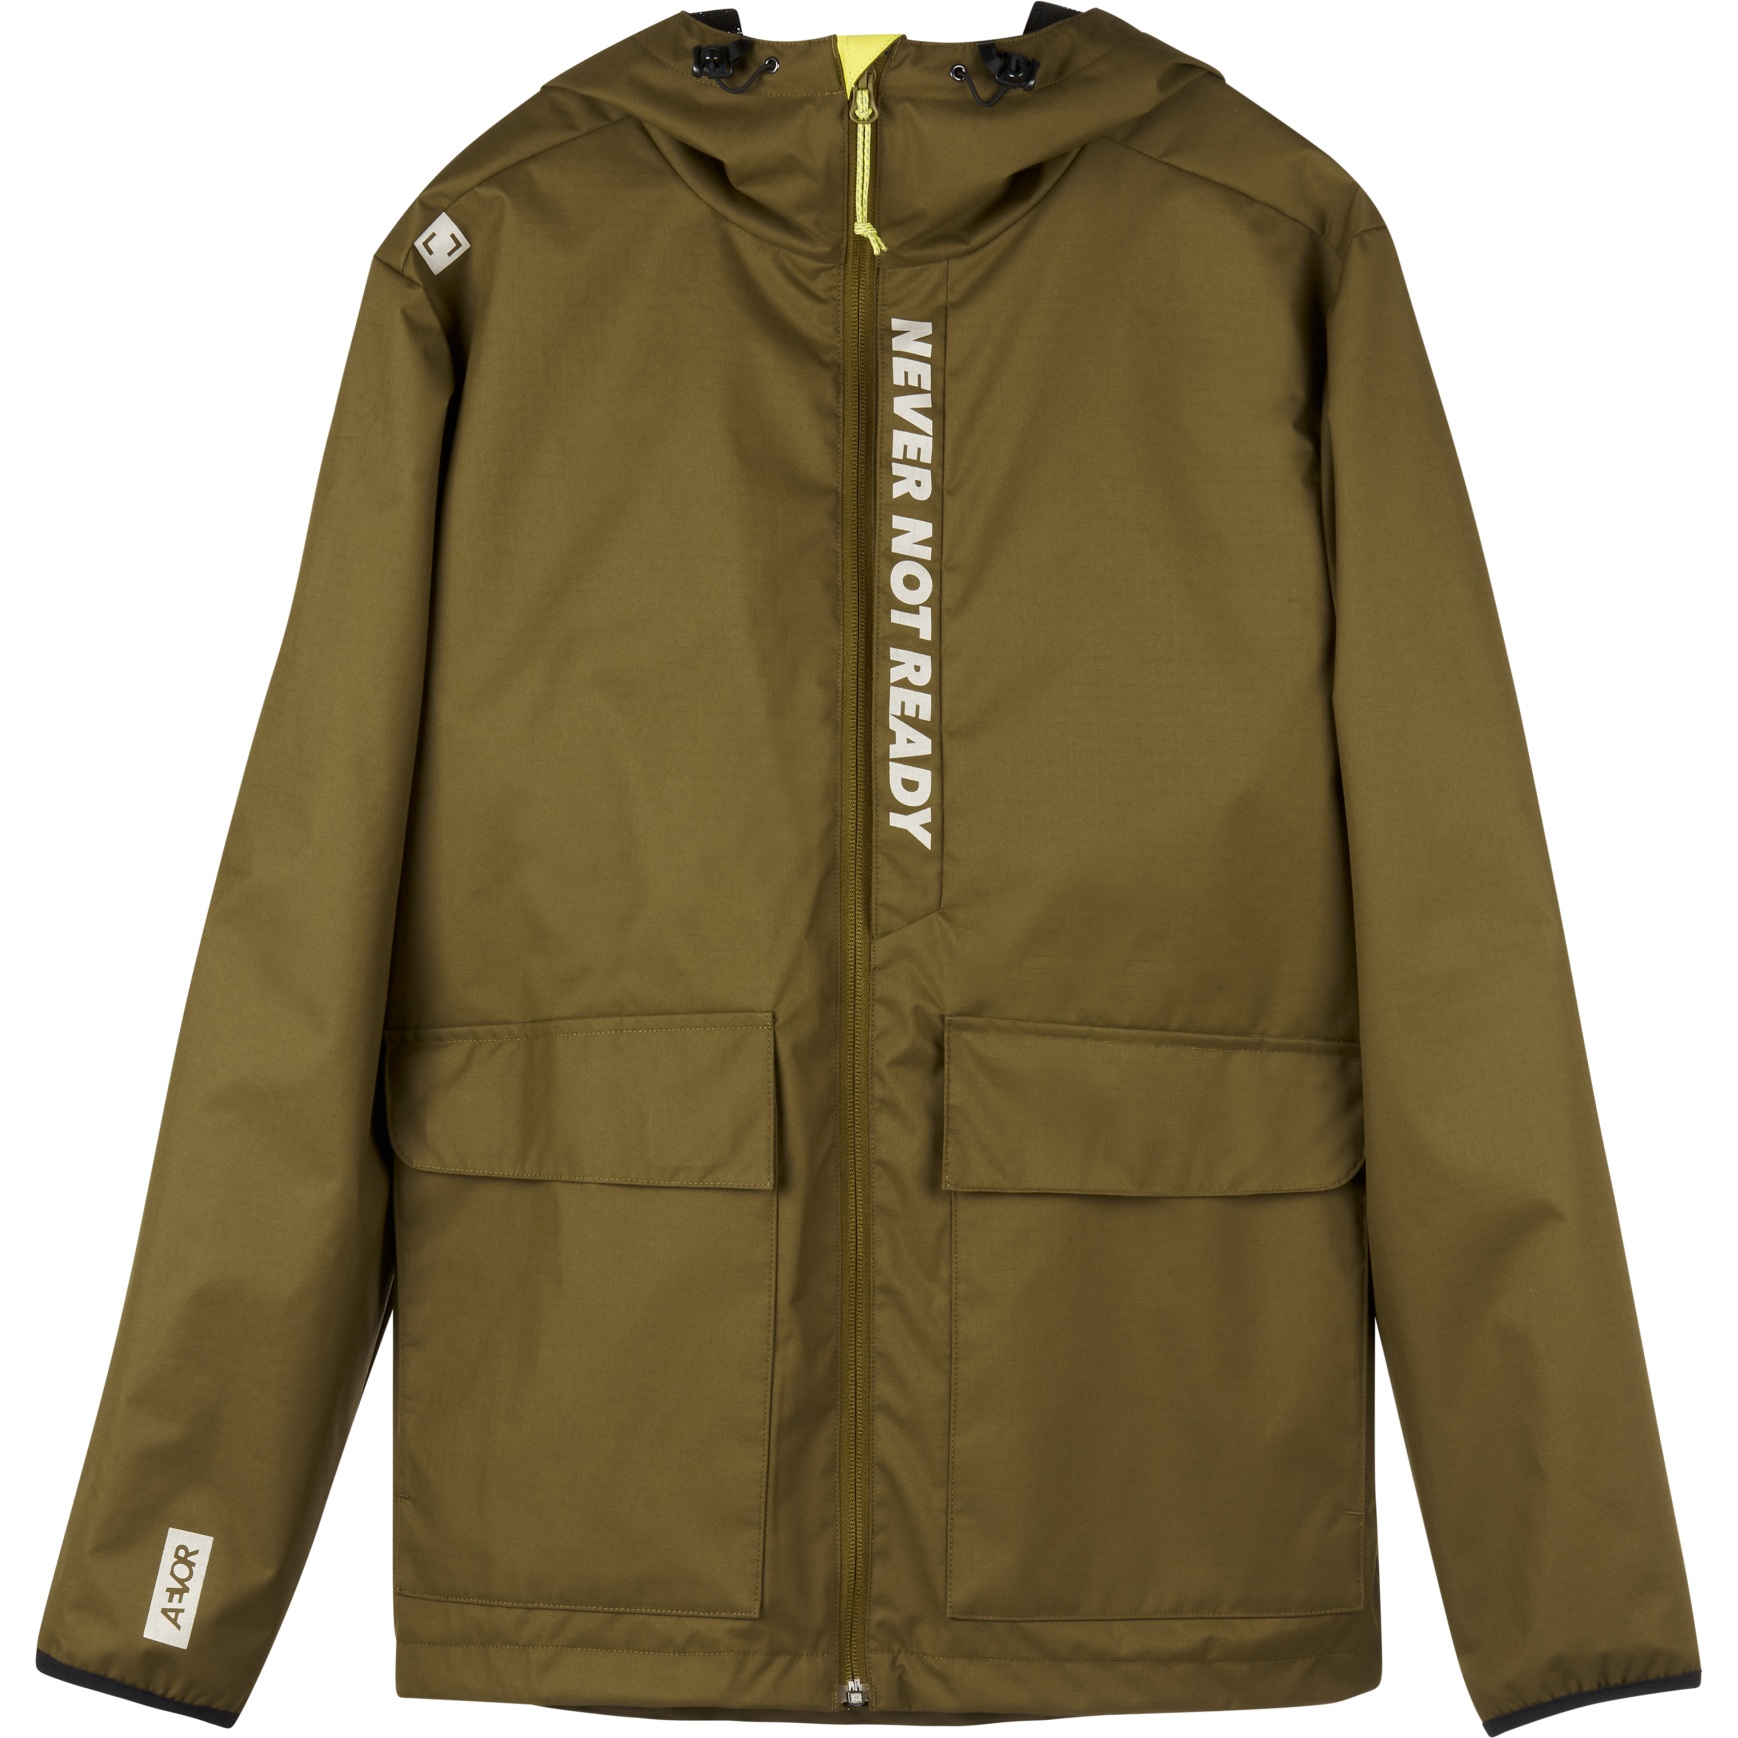 Productfoto van AEVOR City Breaker Jacket - Uniform Green